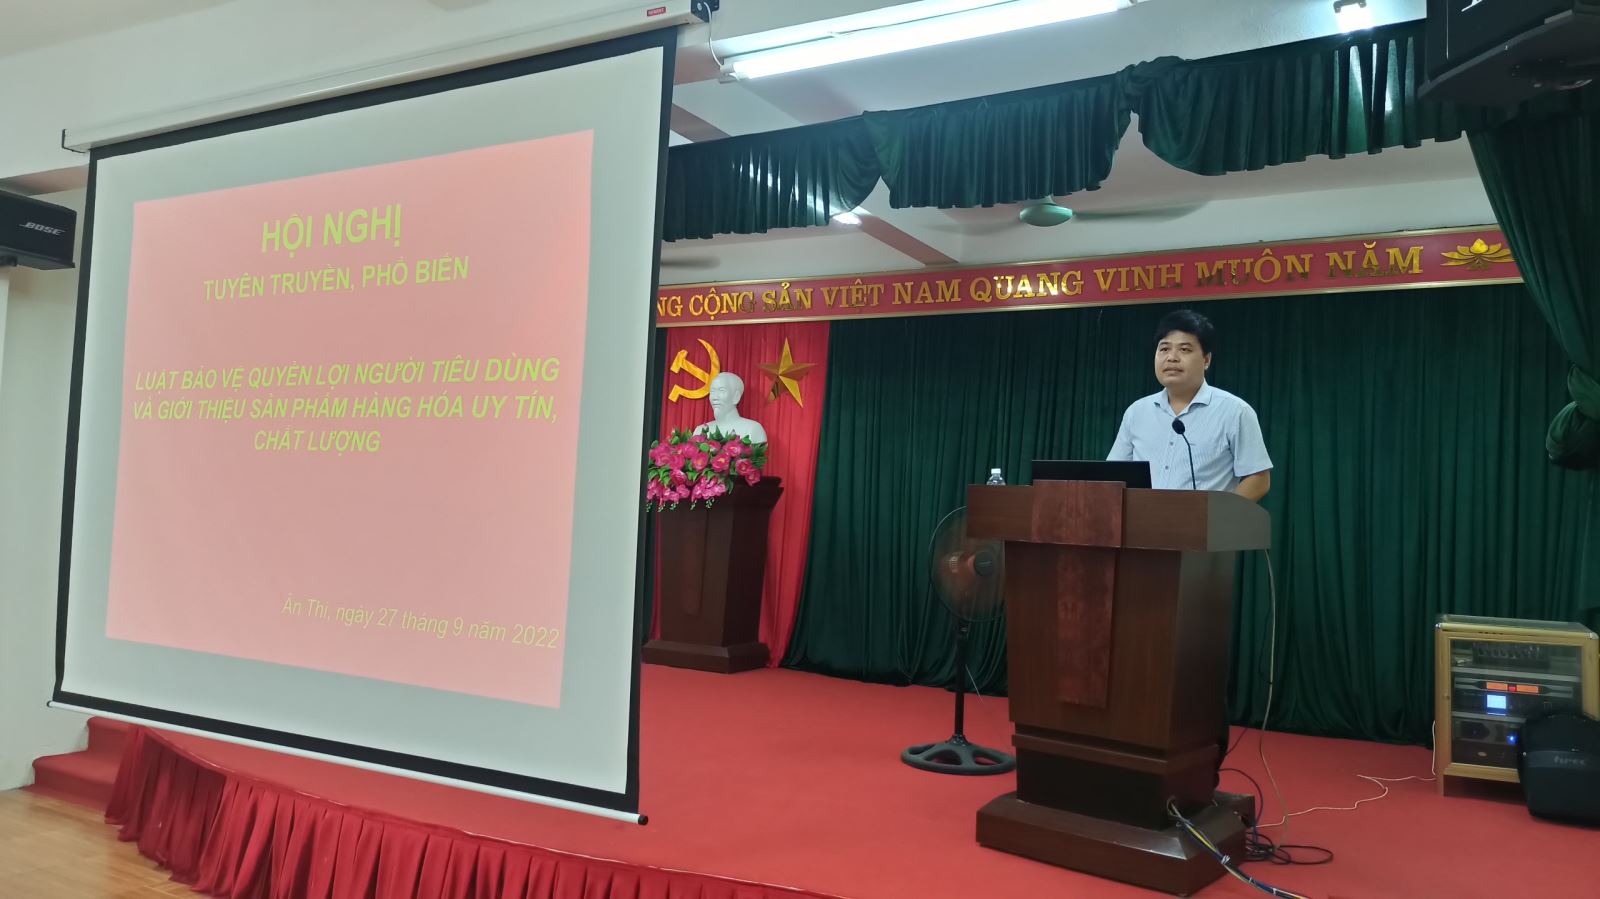 Hưng Yên - Hội nghị tuyên truyền, phổ biến các quy định của pháp luật về bảo vệ quyền lợi người tiêu dùng cho các hội viên phụ nữ huyện Ân Thi